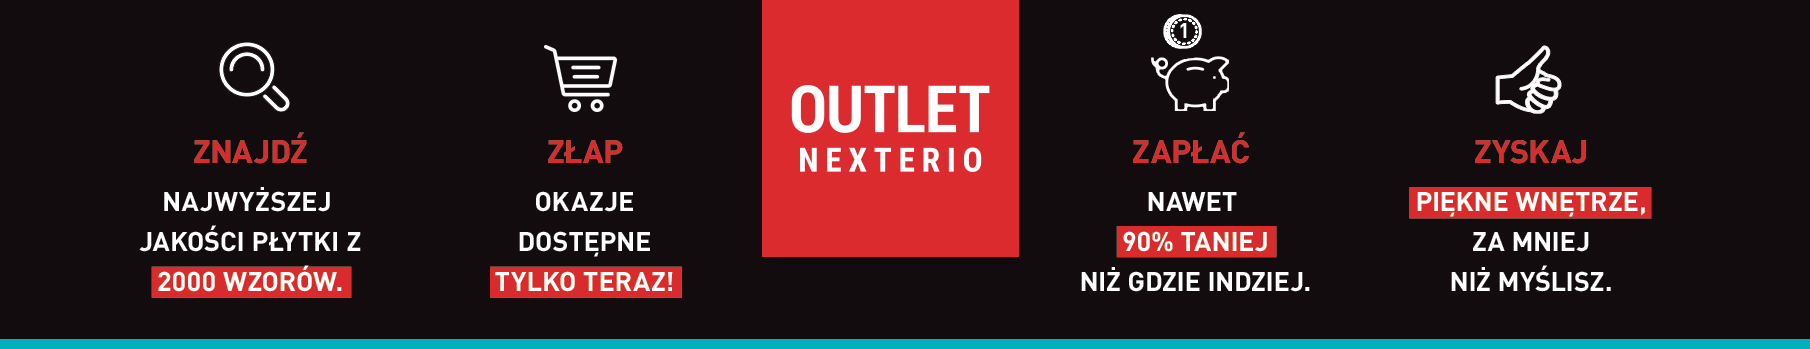 Outlet Nexterio Nowy Sącz